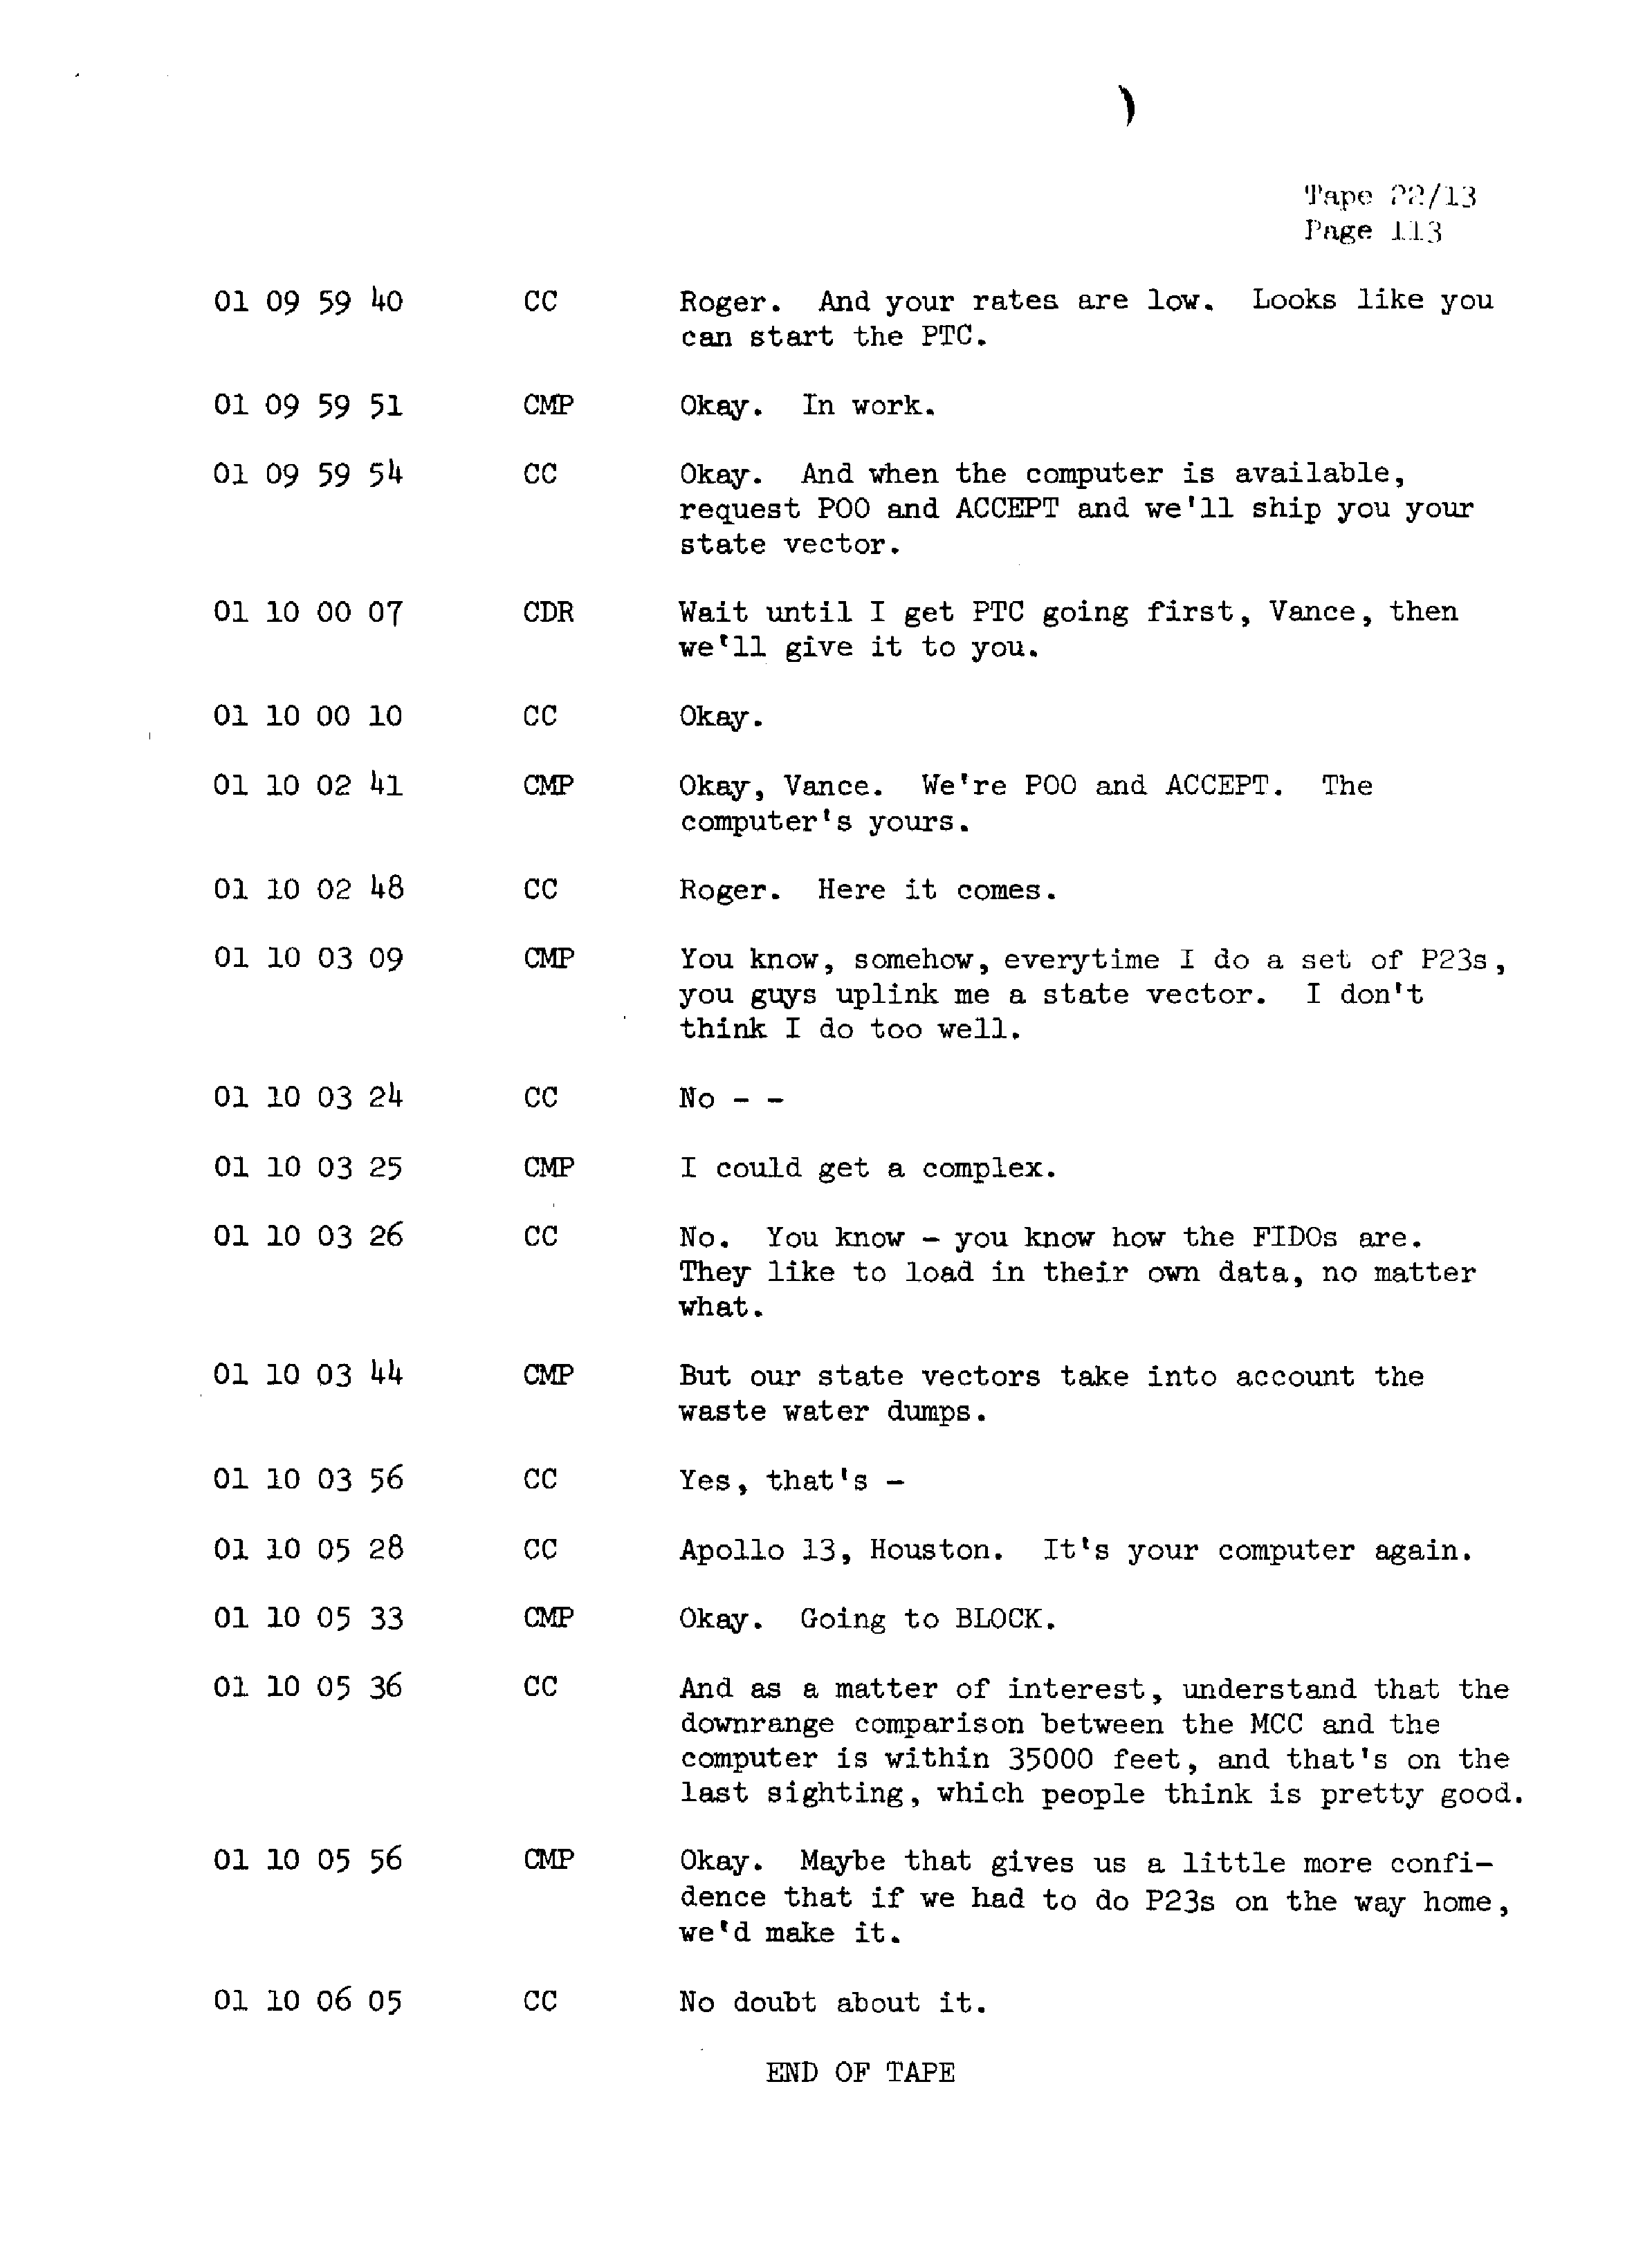 Page 120 of Apollo 13’s original transcript